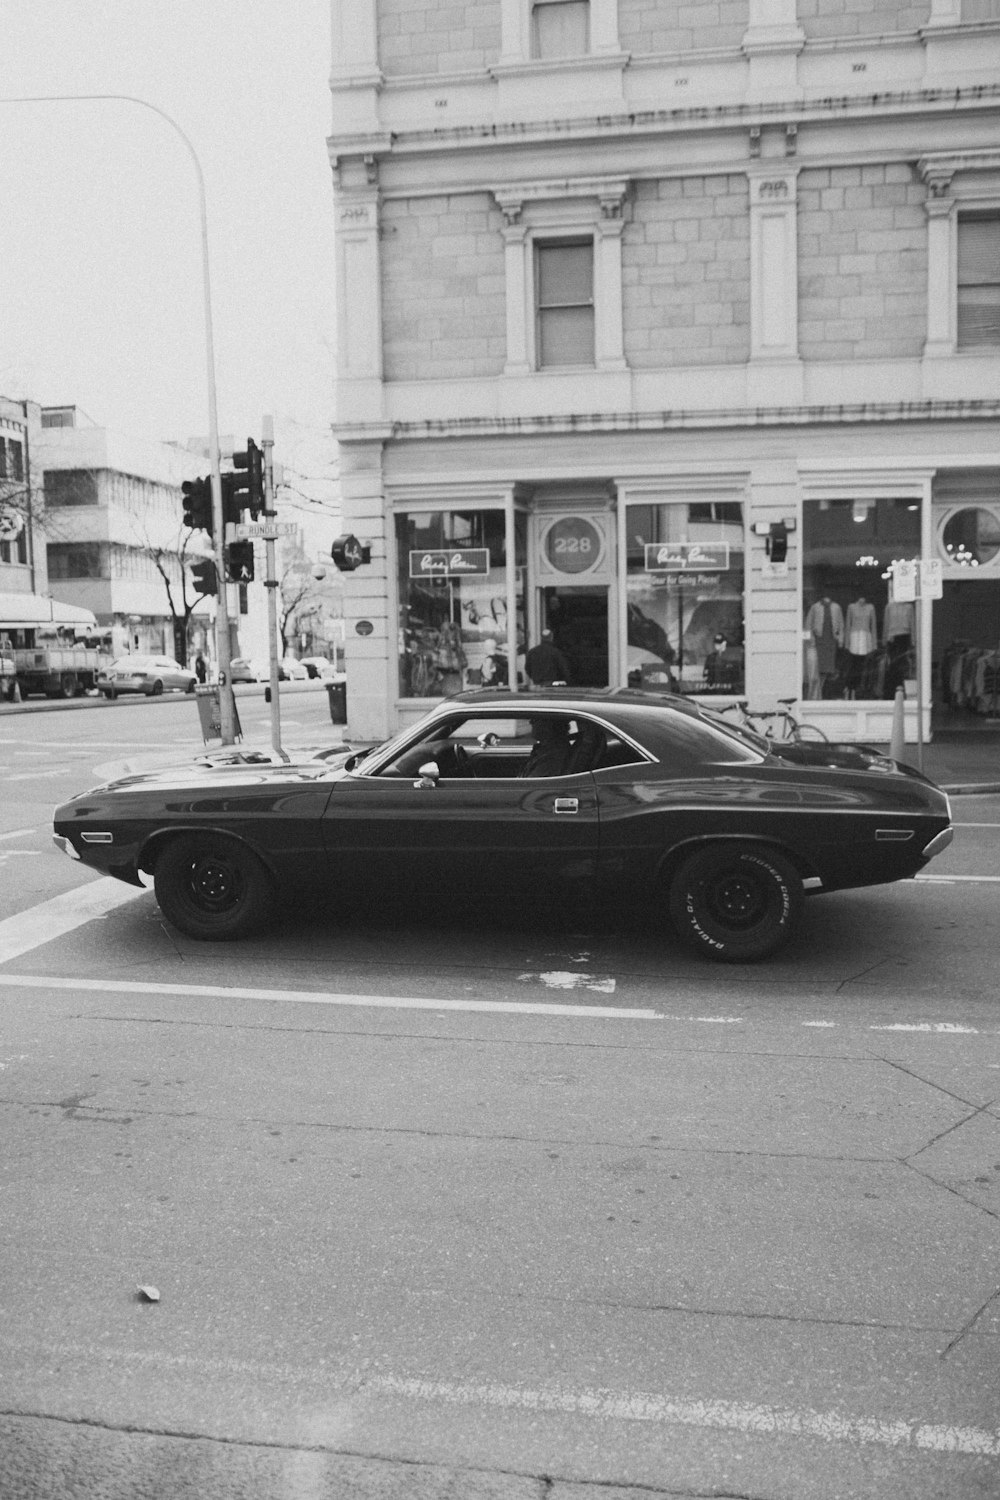 Une photo en noir et blanc d’une voiture dans une rue